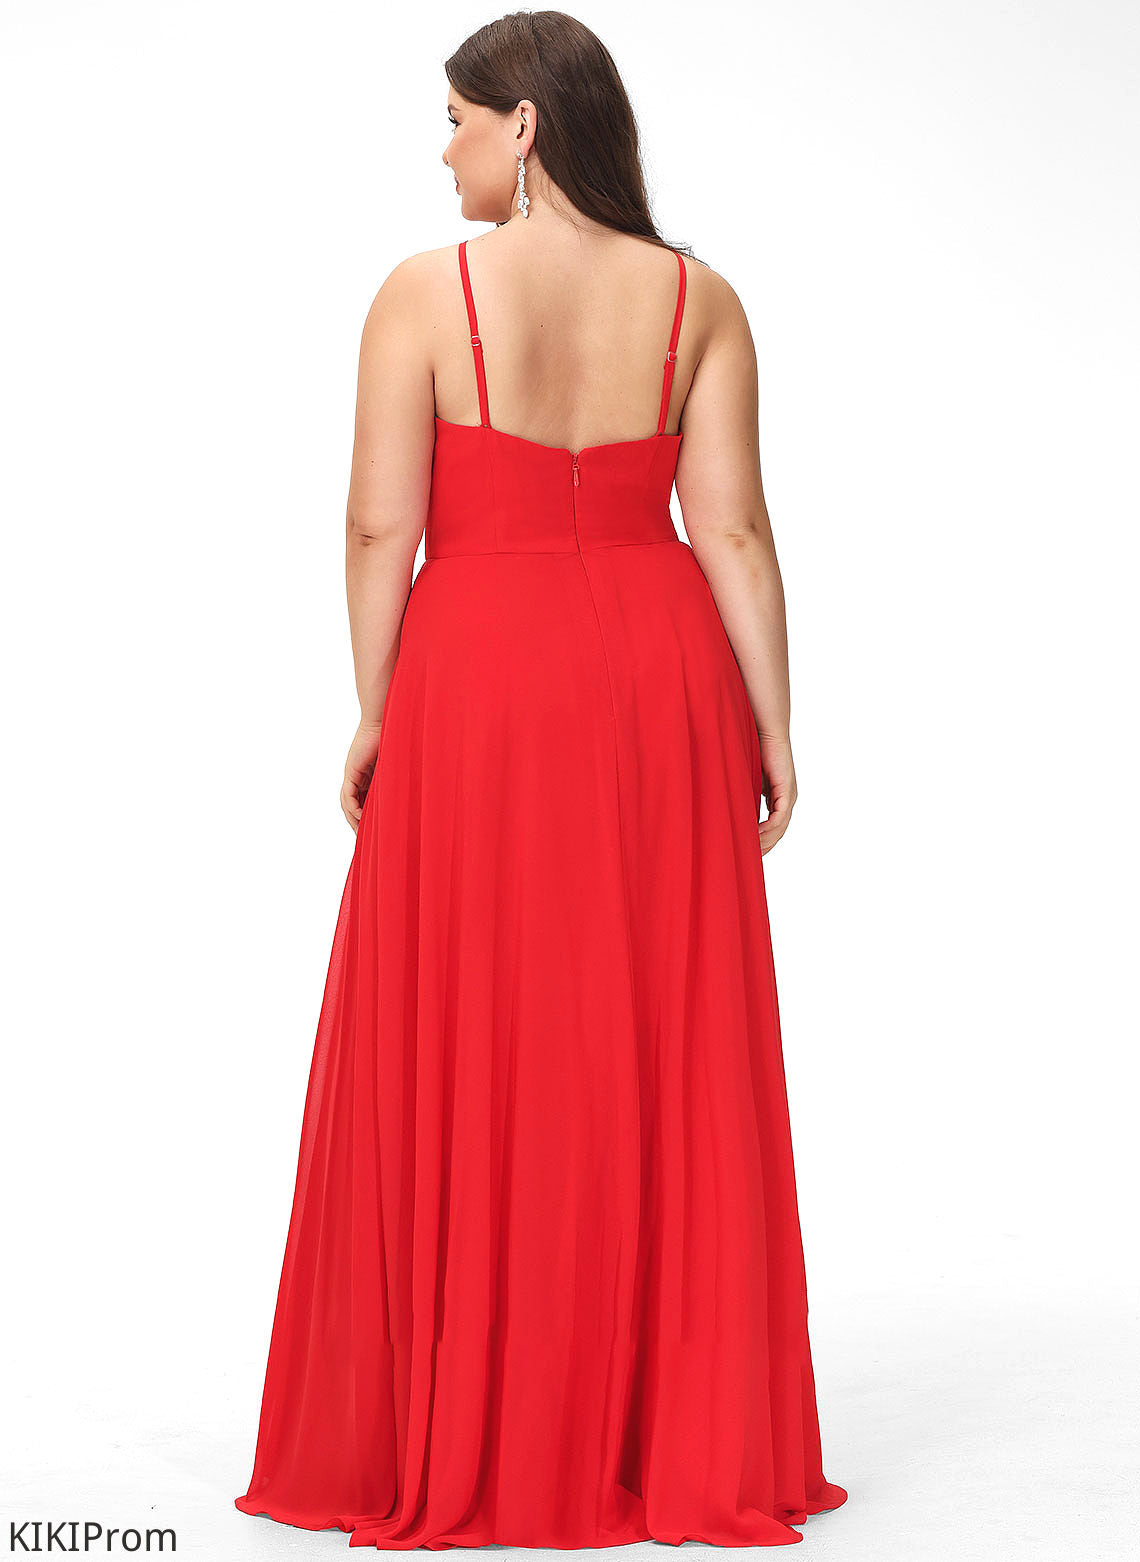 ScoopNeck Neckline A-Line Length Fabric Straps Silhouette Floor-Length Zaria Bridesmaid Dresses